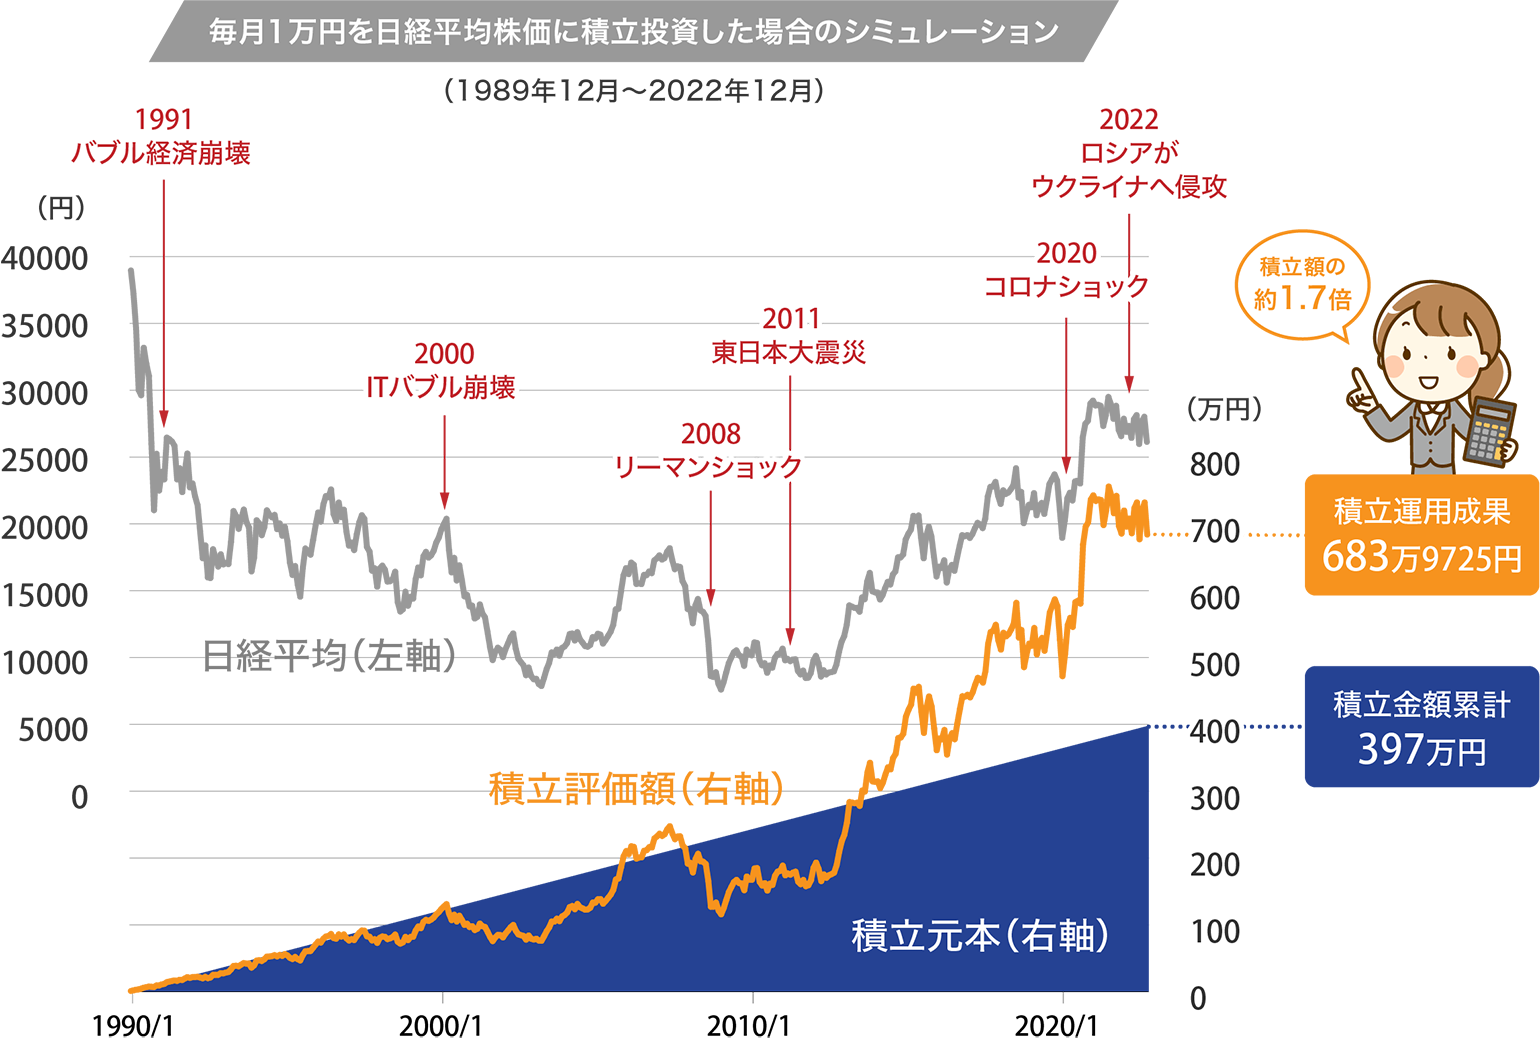 毎月1万円を日経平均株価に積立投資した場合のシミュレーション